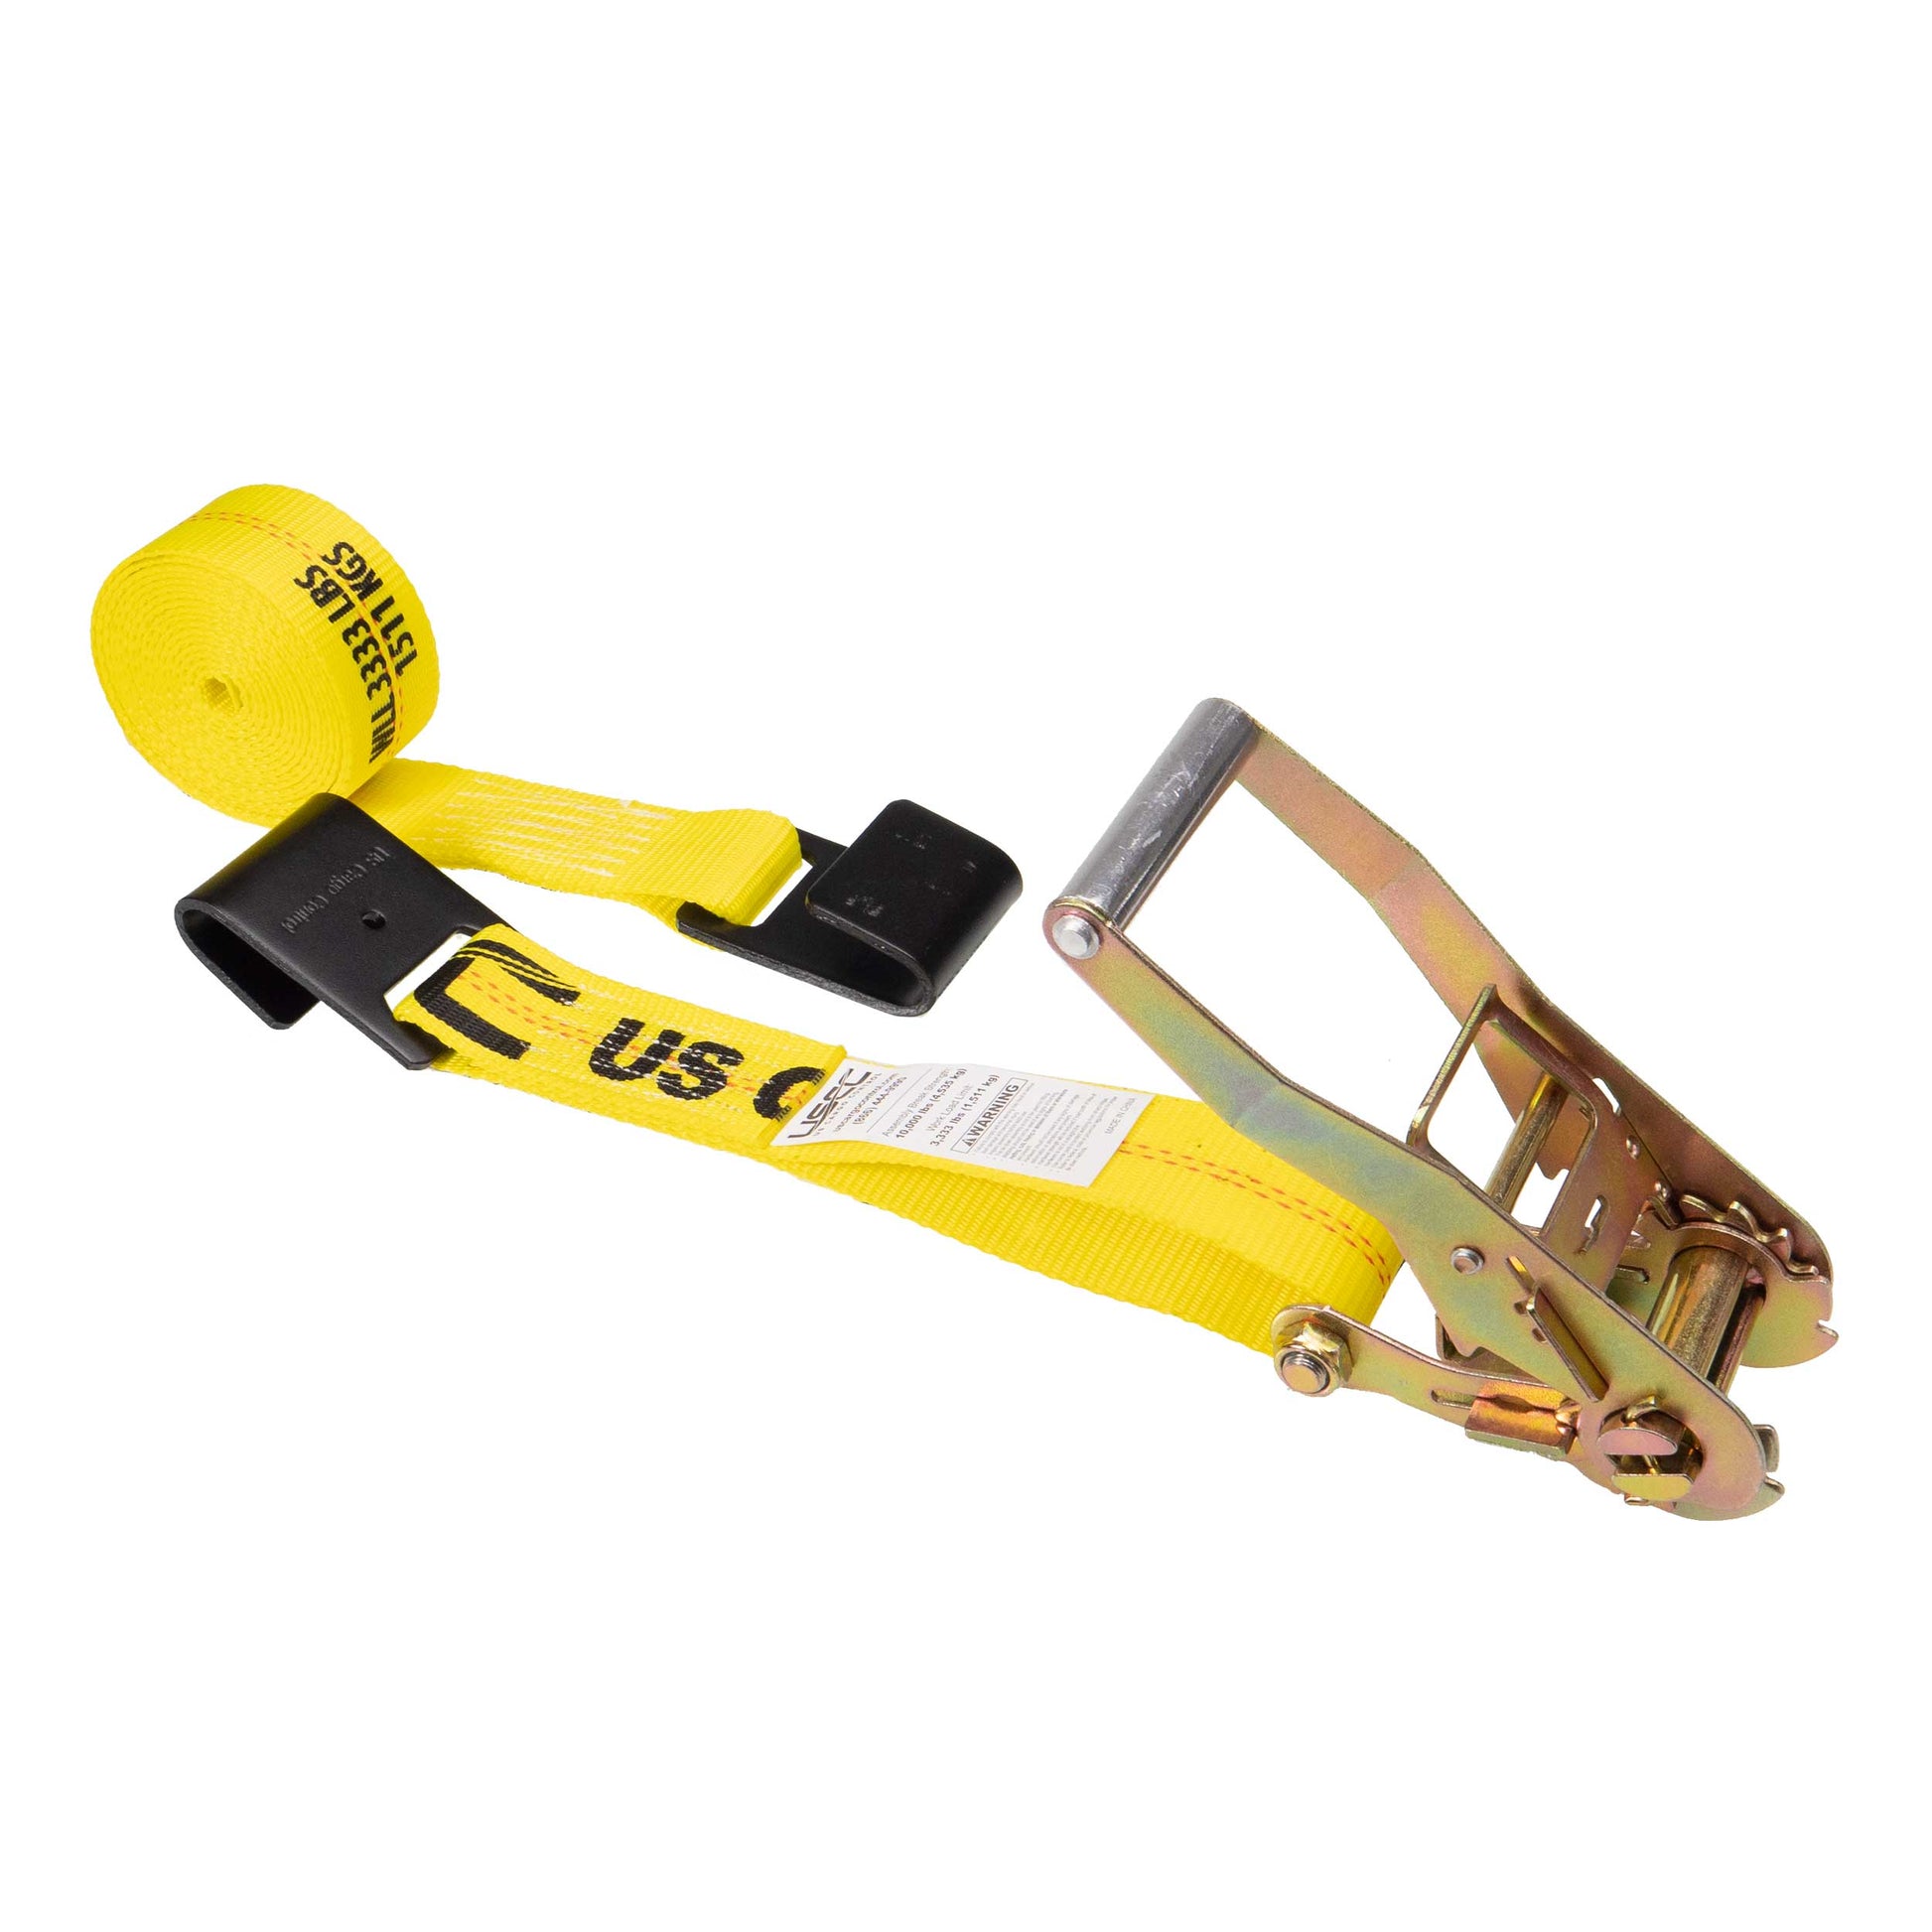 50' ratchet strap -  2" yellow flat hook ratchet strap